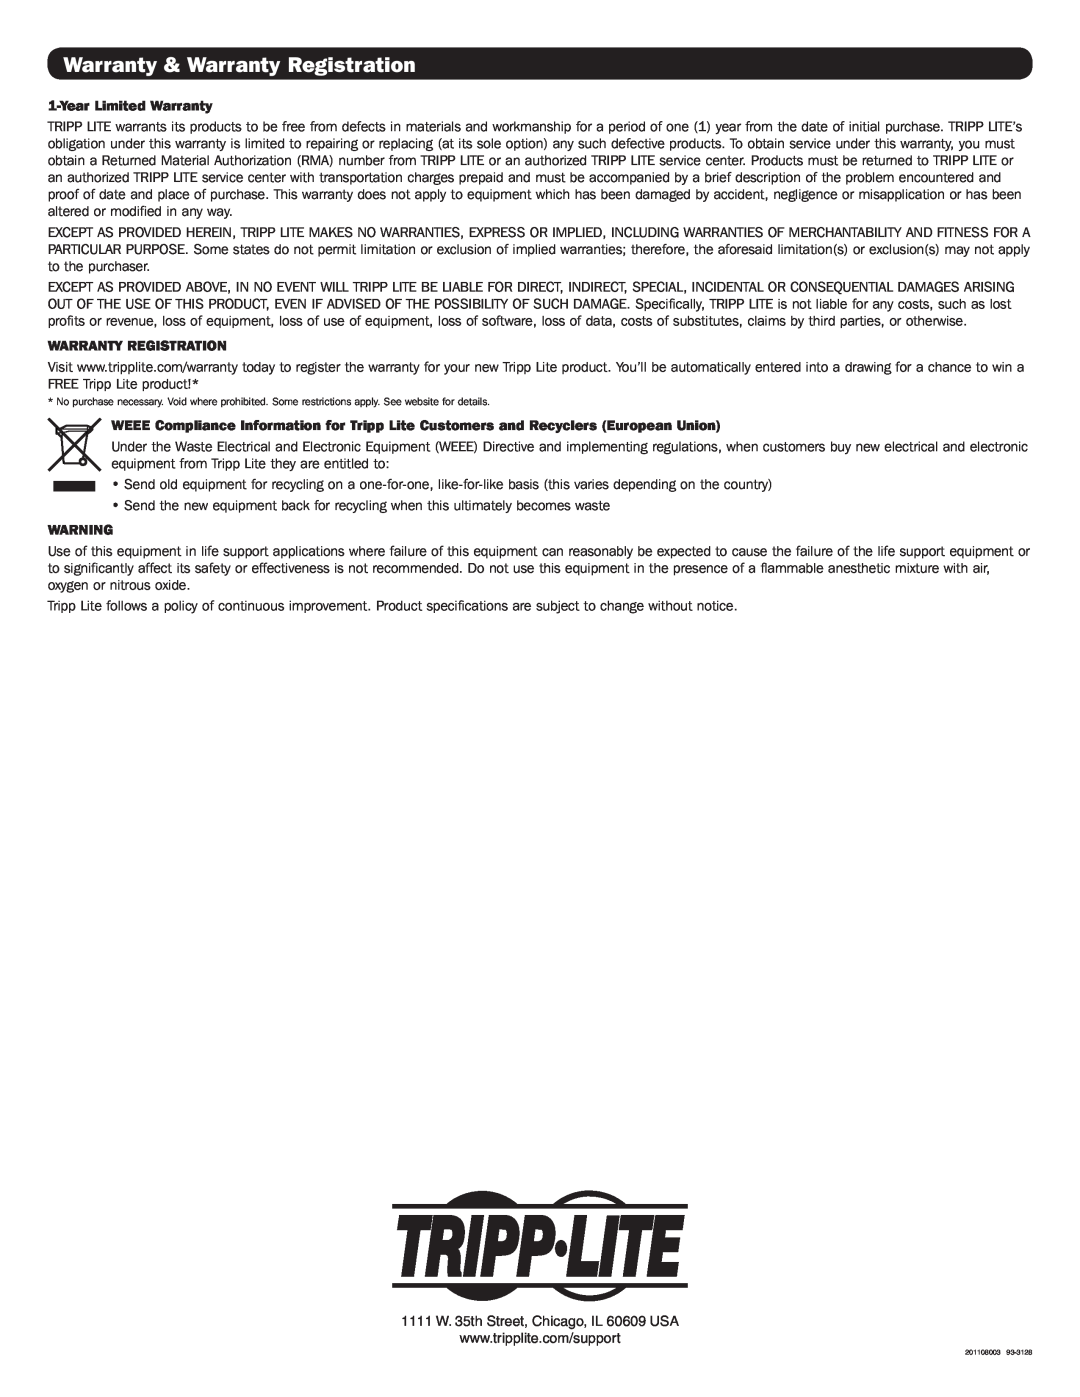 Tripp Lite B120-000-SL warranty Warranty & Warranty Registration, Year Limited Warranty 